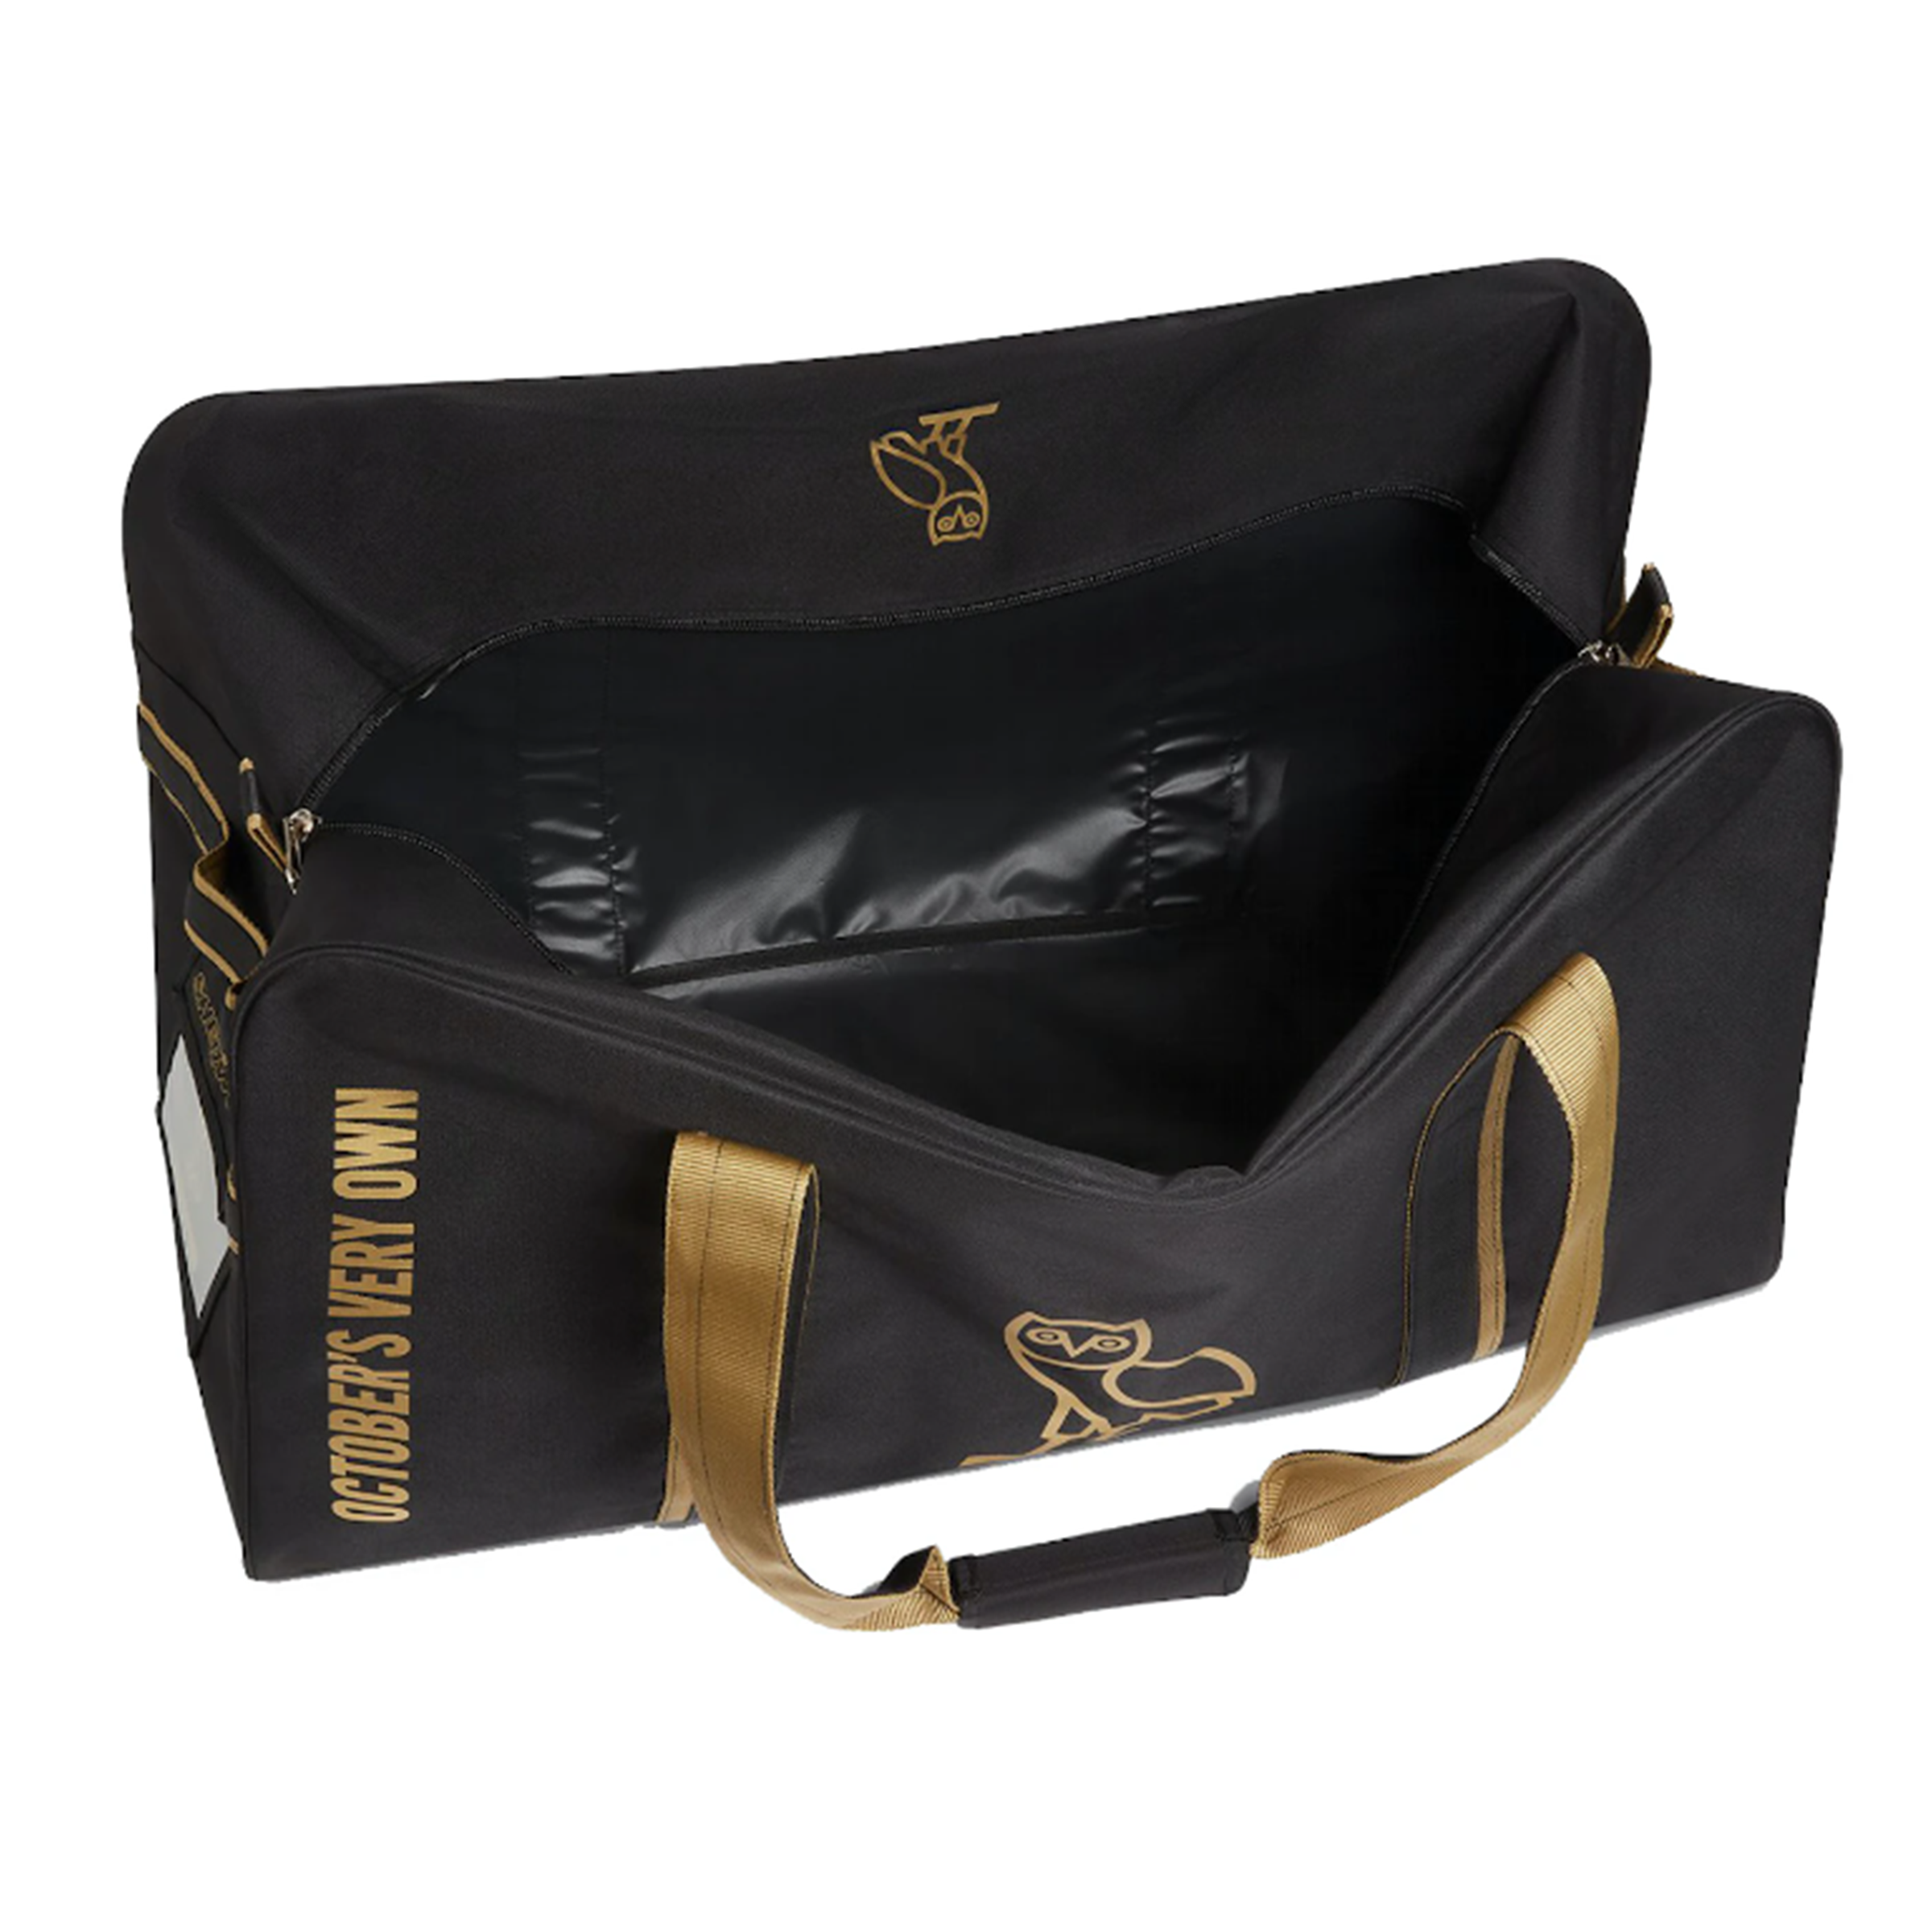 OVO x Sherwood - Hockey Equipment Bag